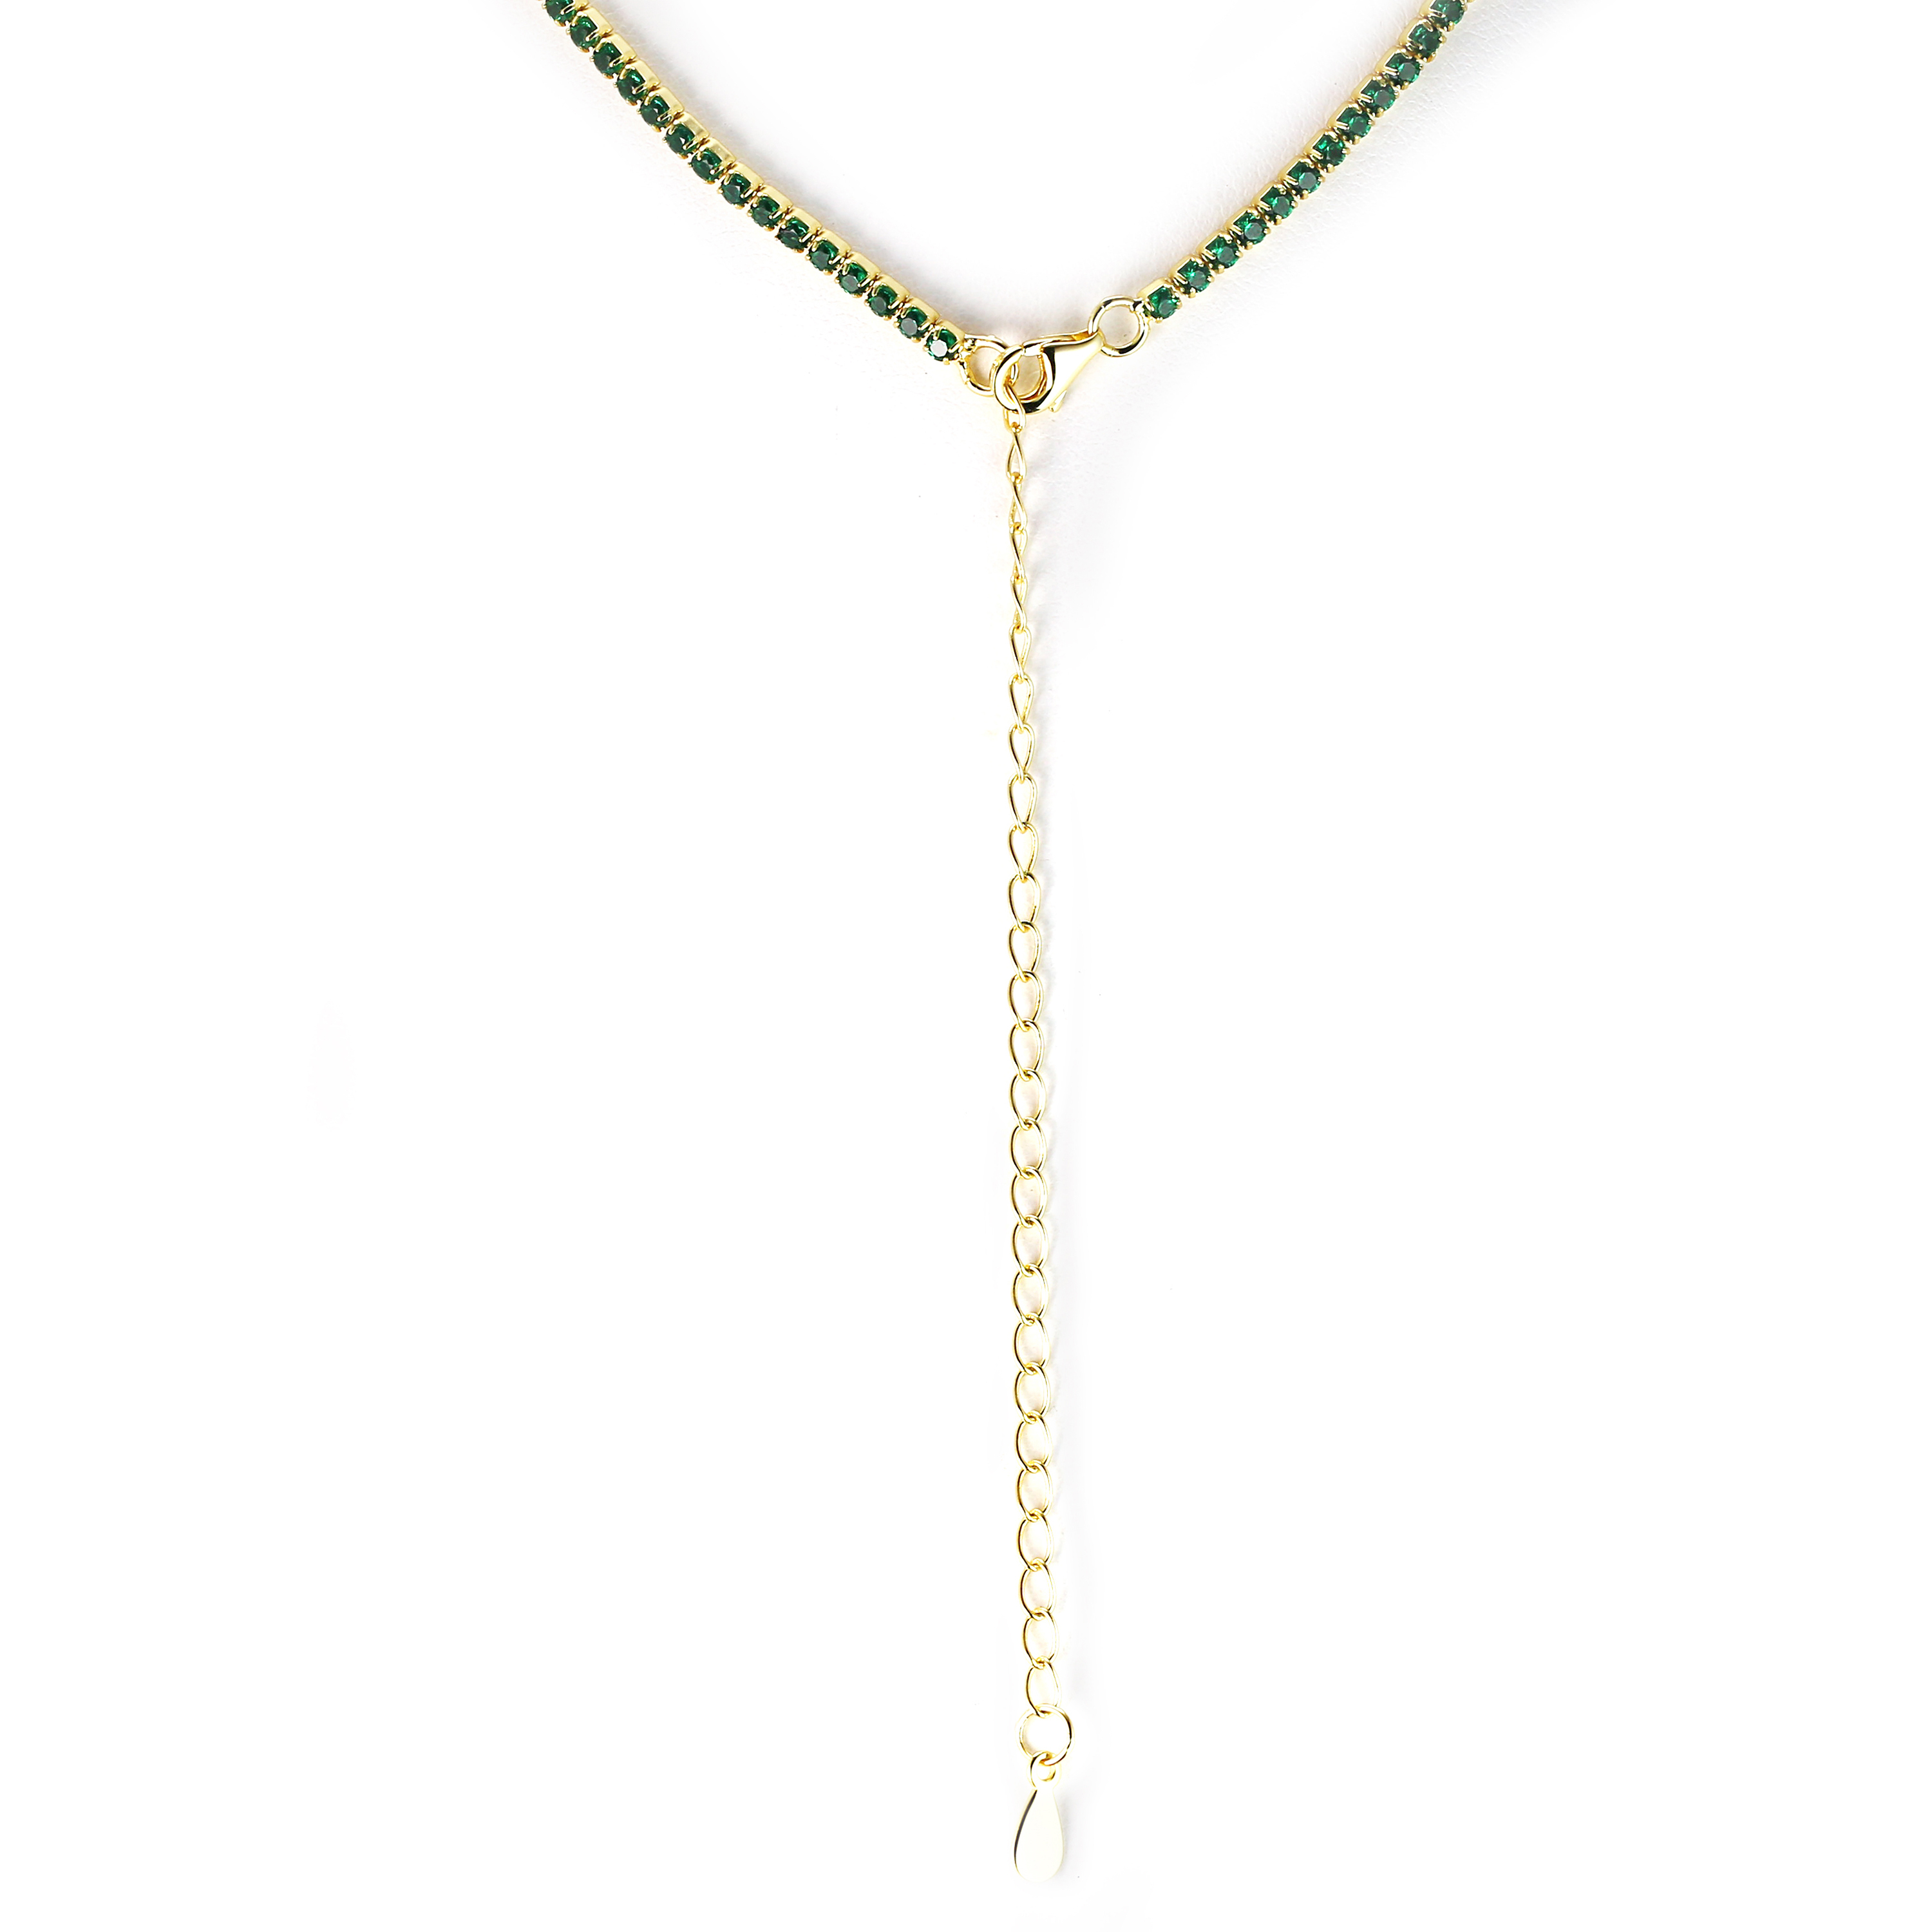 SIERRA - Round Cut Tennis Choker, gold with green gems, closeup showing extention